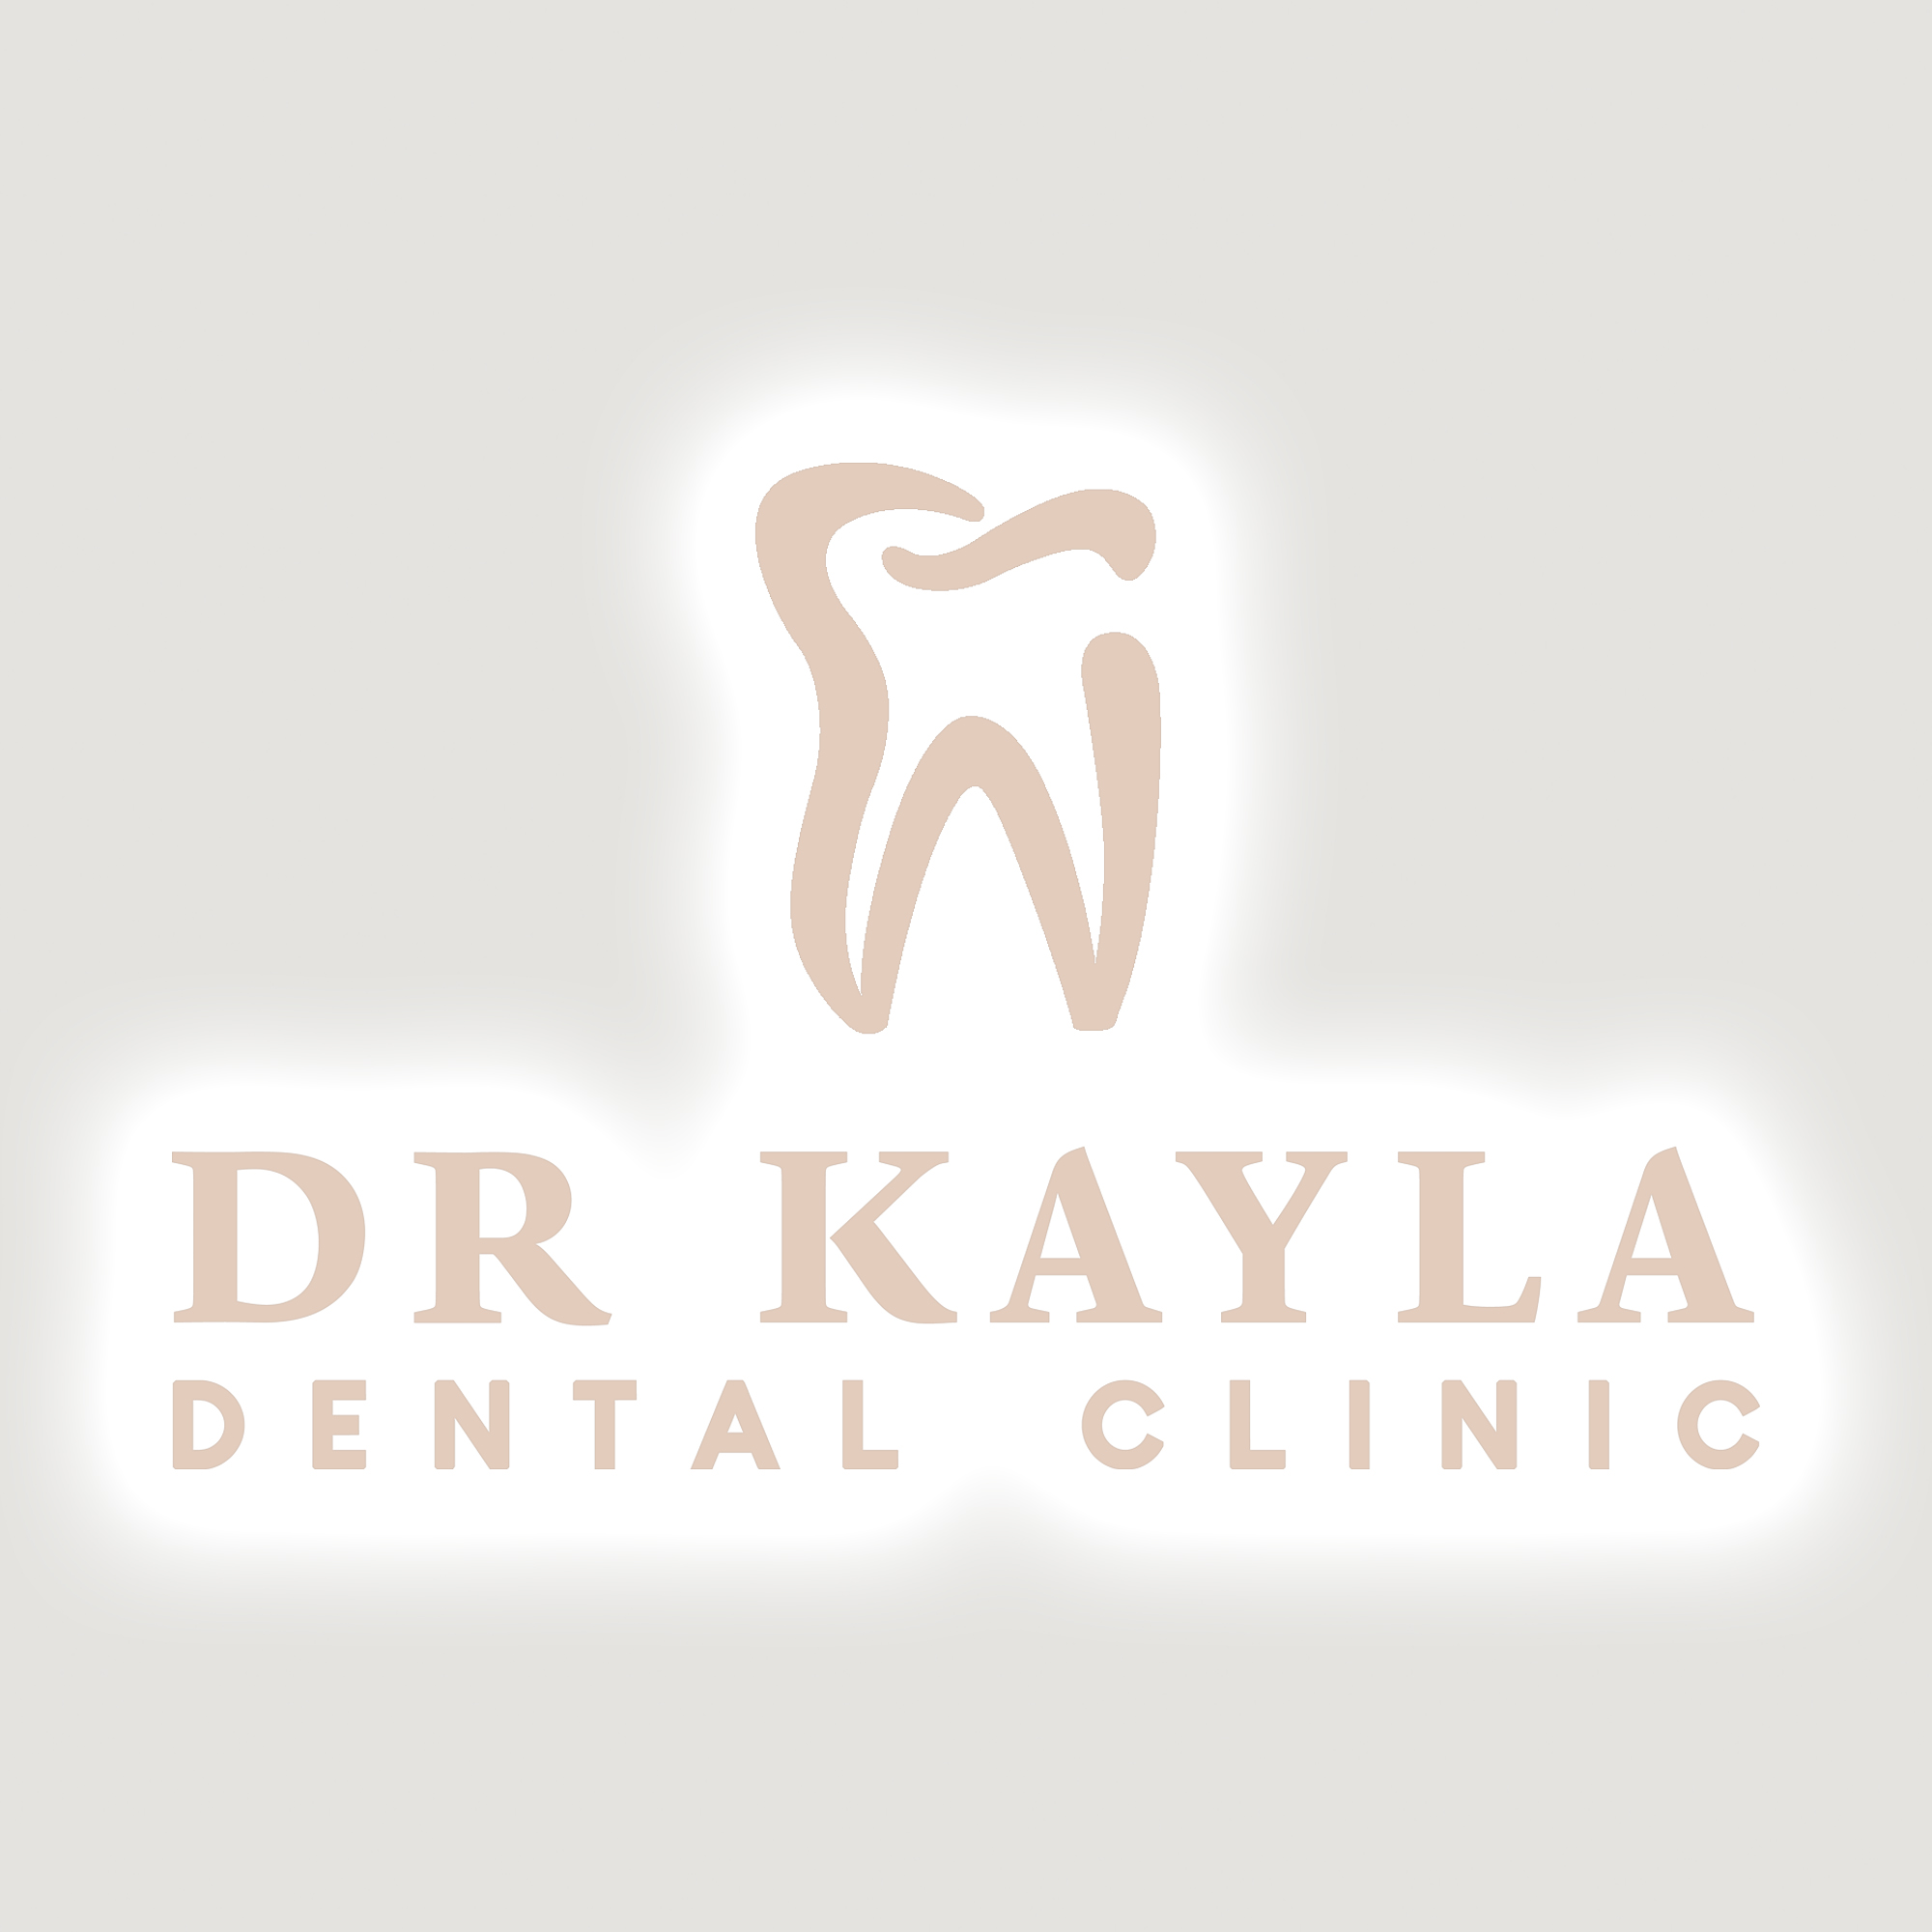 https://my.mncjobz.com/company/dr-kayla-dental-clinic